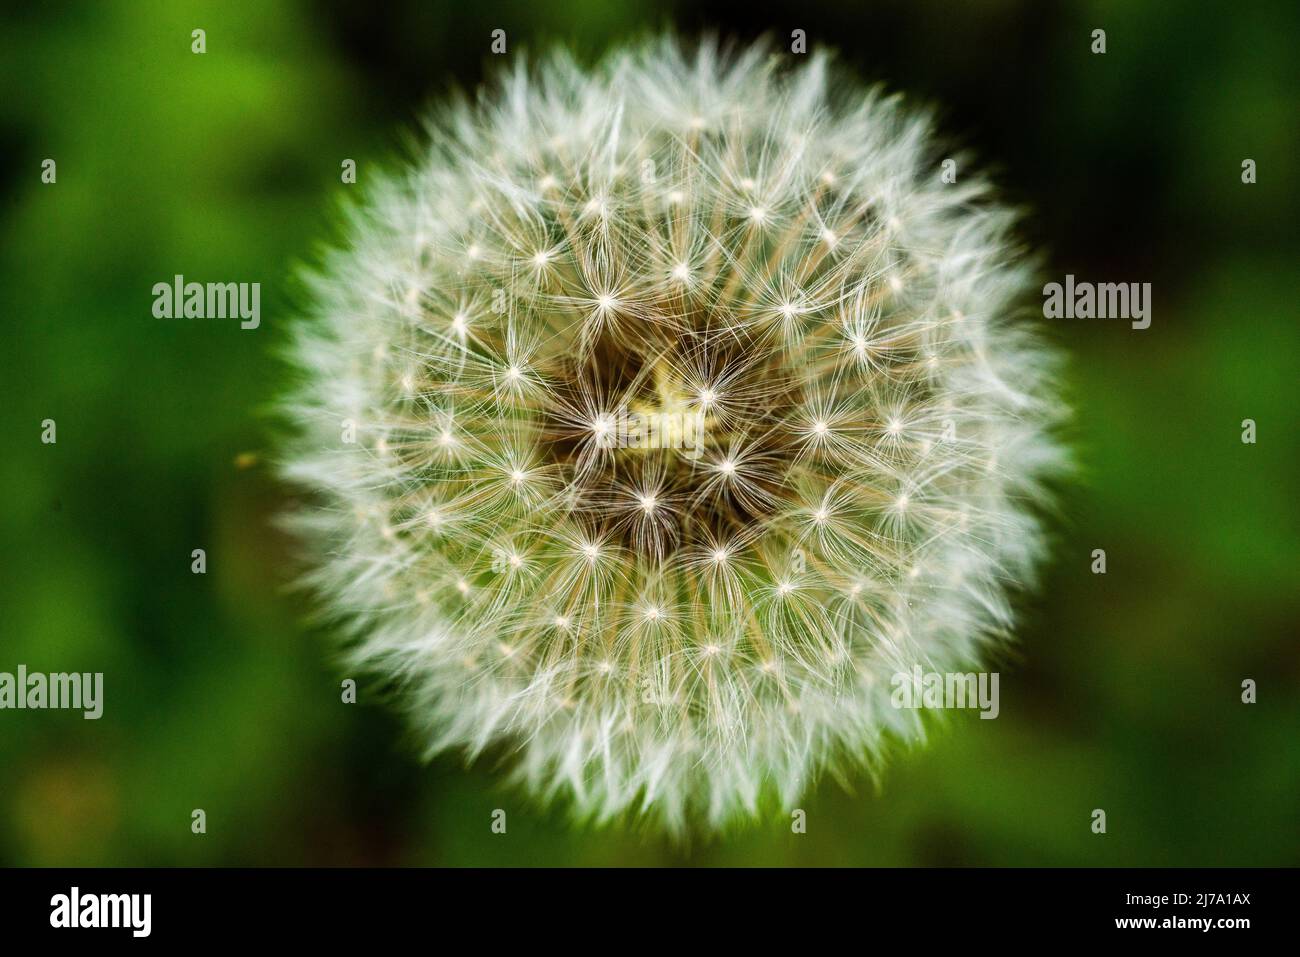 Pusteblume (Löwenzahn) auf einer Blumenwiese - a dandelion blowball on a lawn Stock Photo